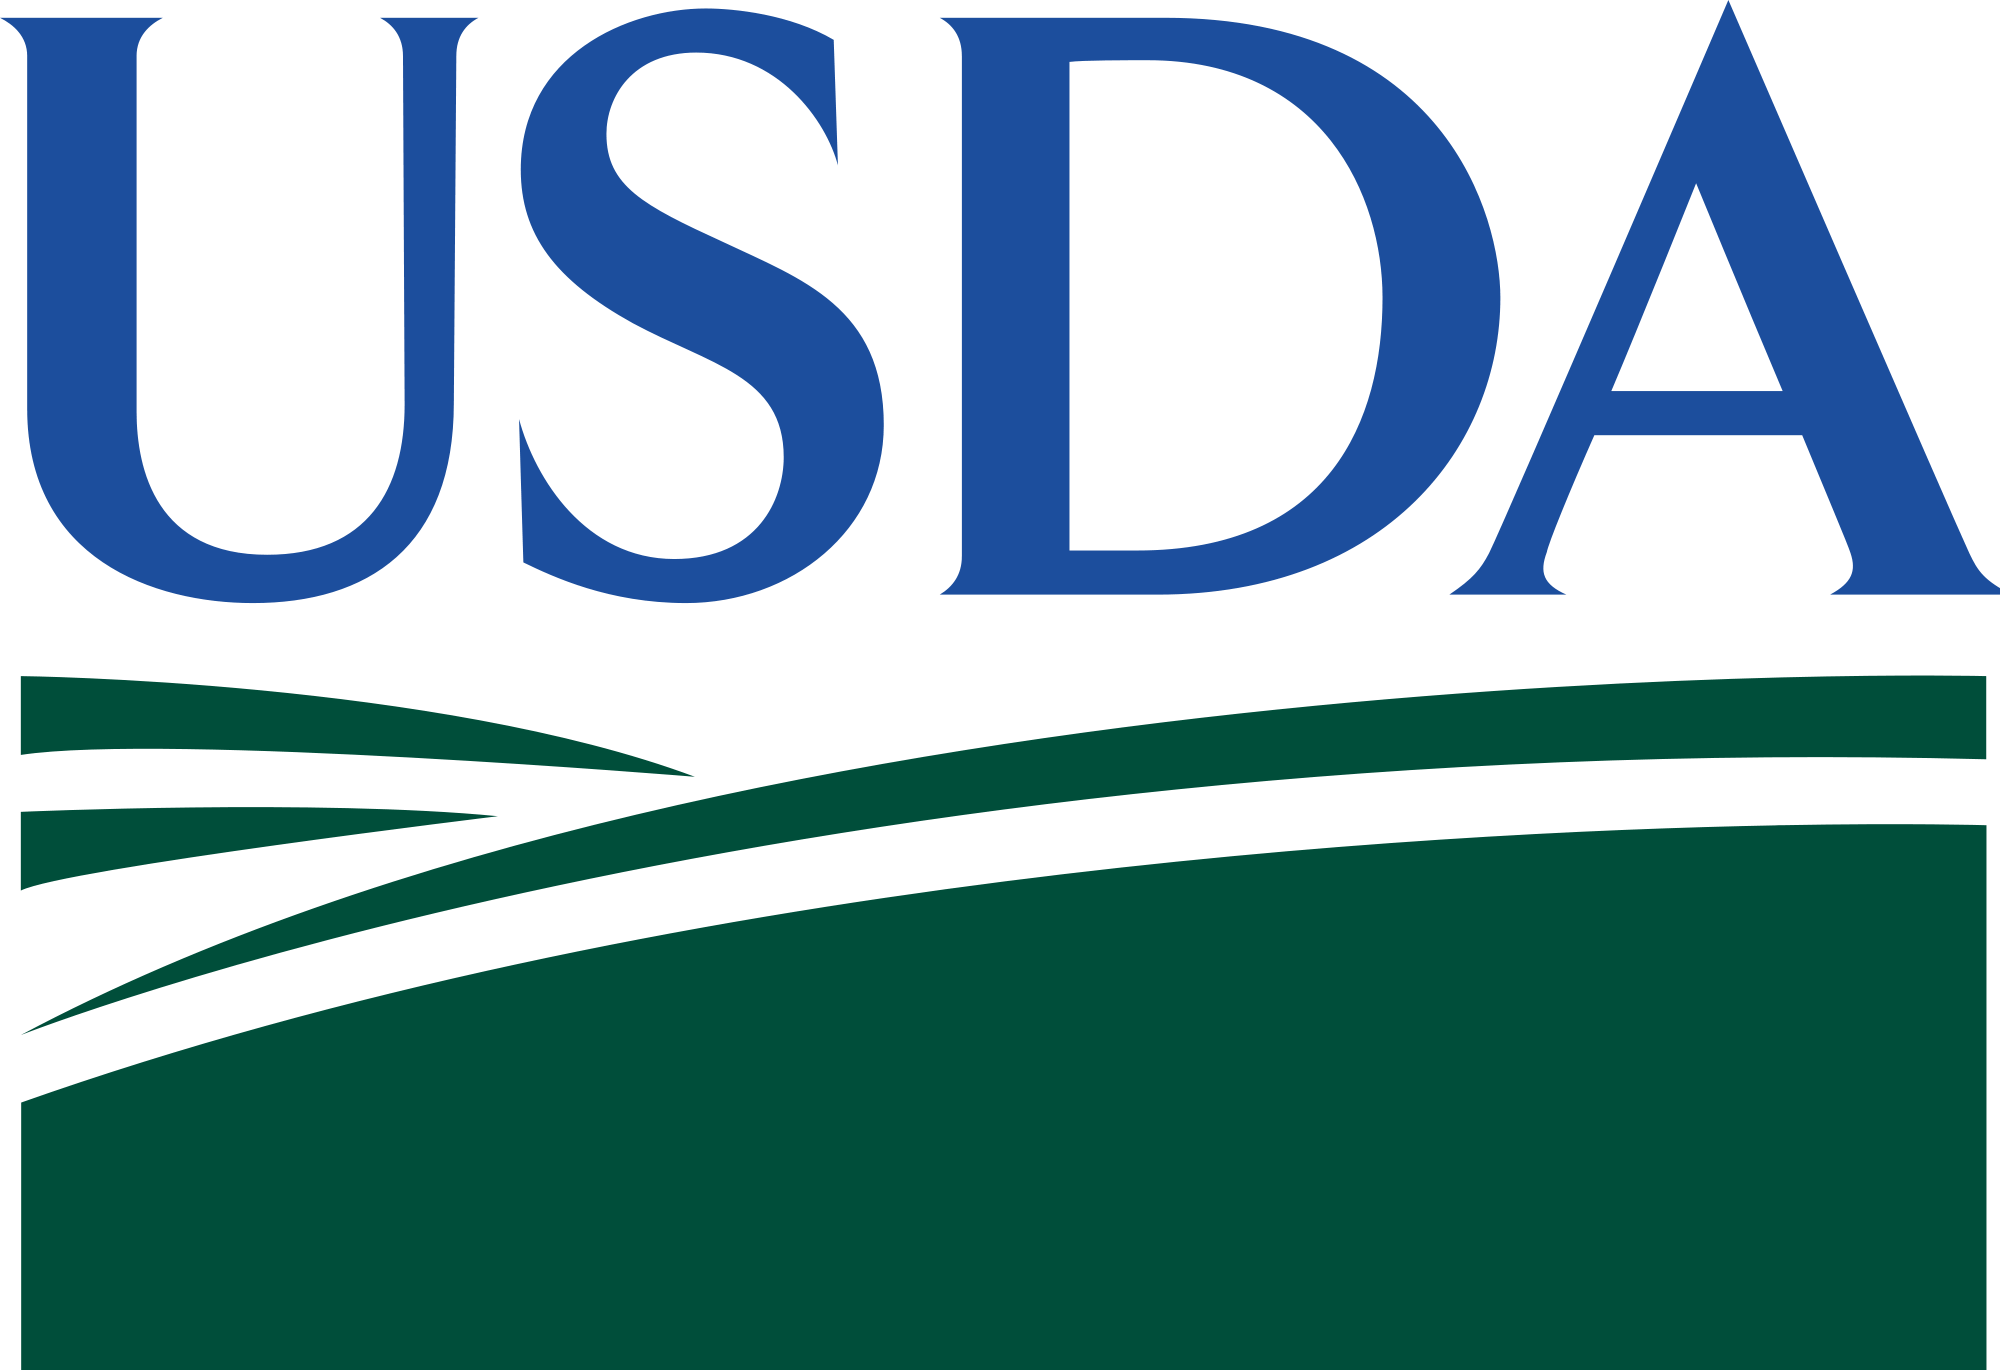 USDA logo, logotype